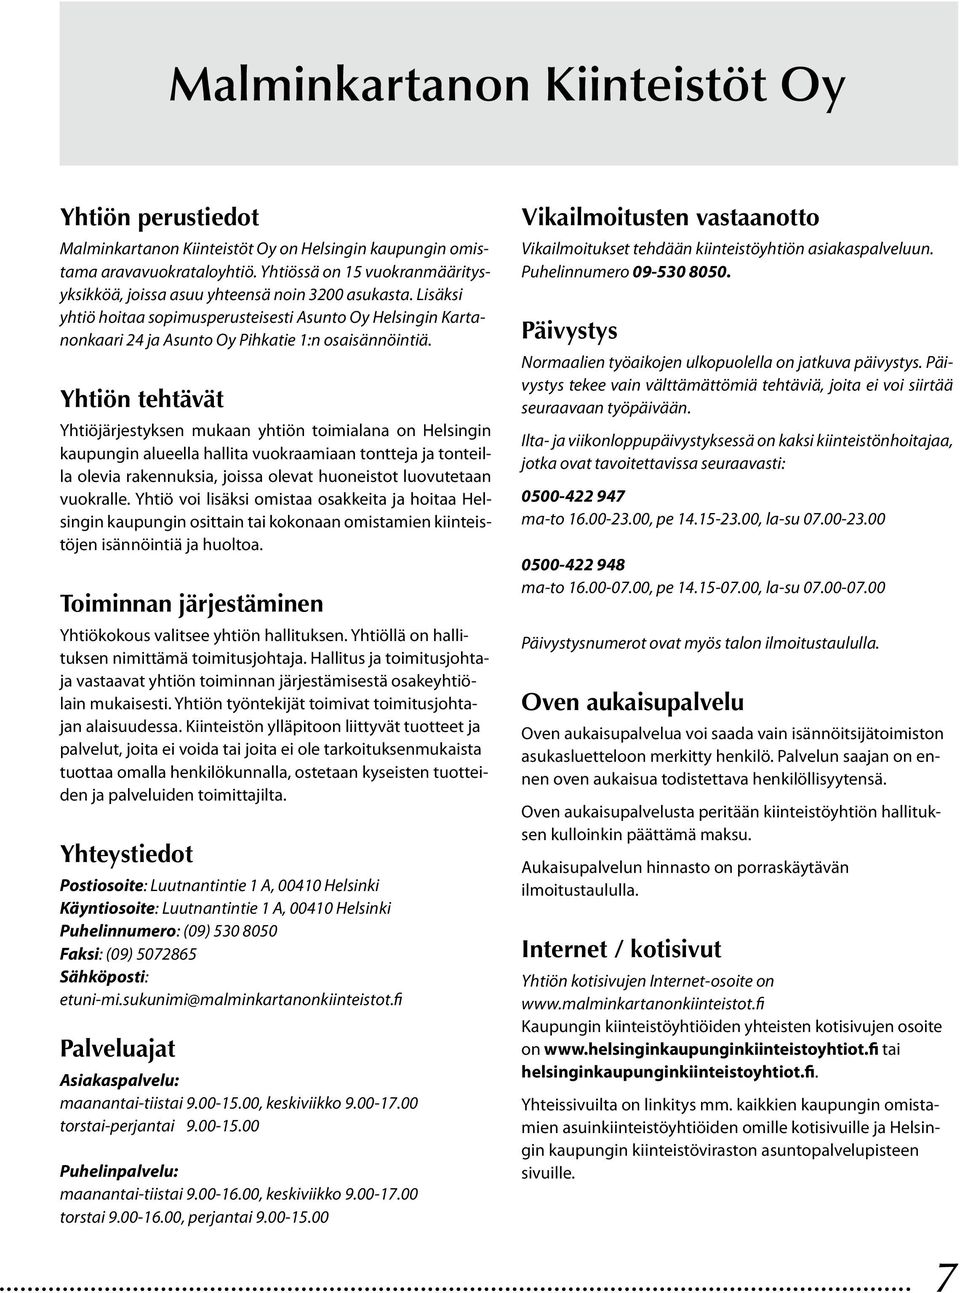 Lisäksi yhtiö hoitaa sopimusperusteisesti Asunto Oy Helsingin Kartanonkaari 24 ja Asunto Oy Pihkatie 1:n osaisännöintiä.